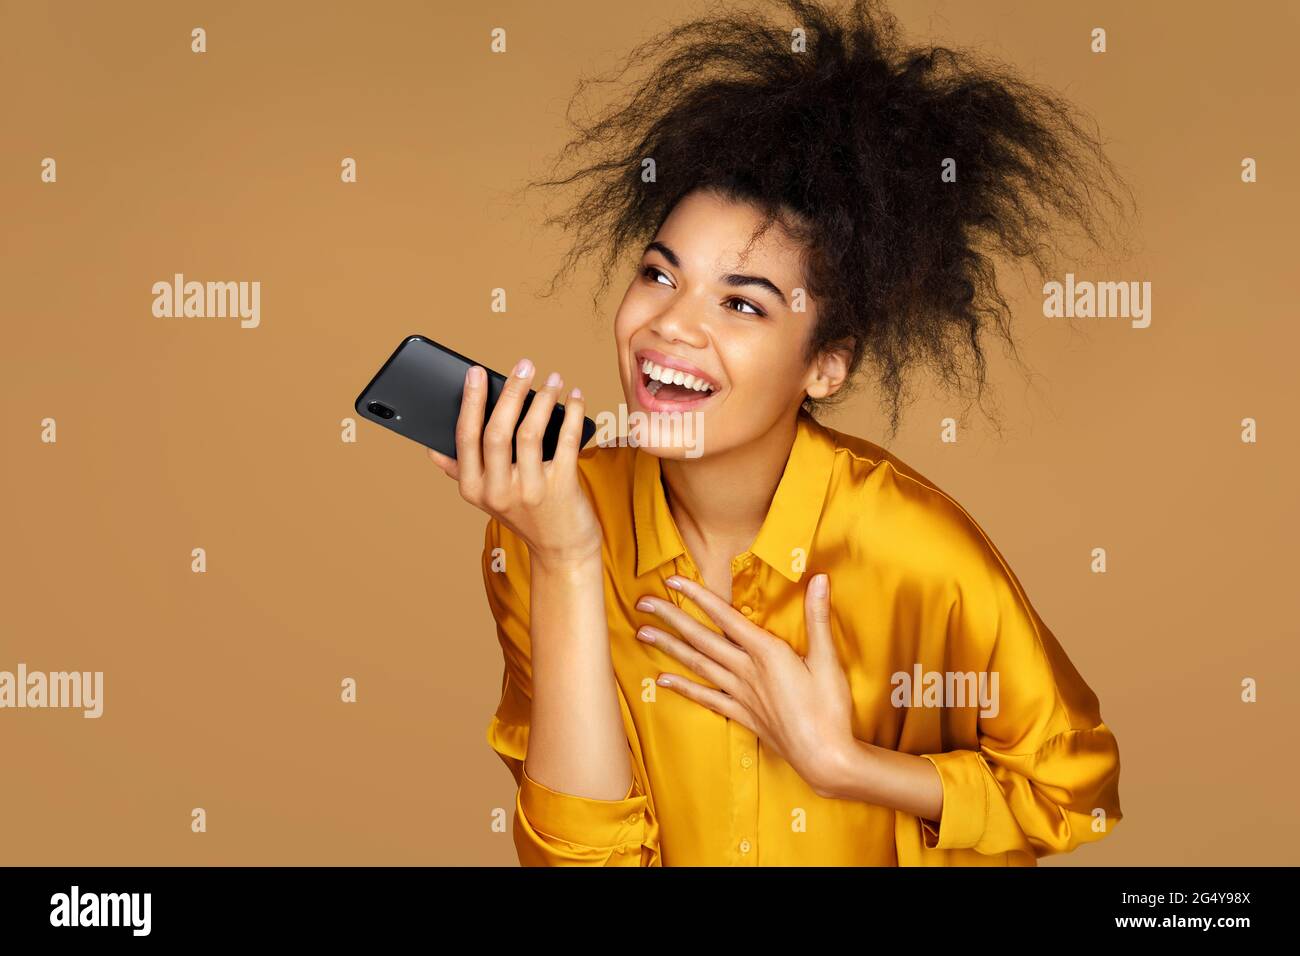 Fille utilise le téléphone, laisse un message vocal. Photo d'une fille afro-américaine sur fond beige Banque D'Images